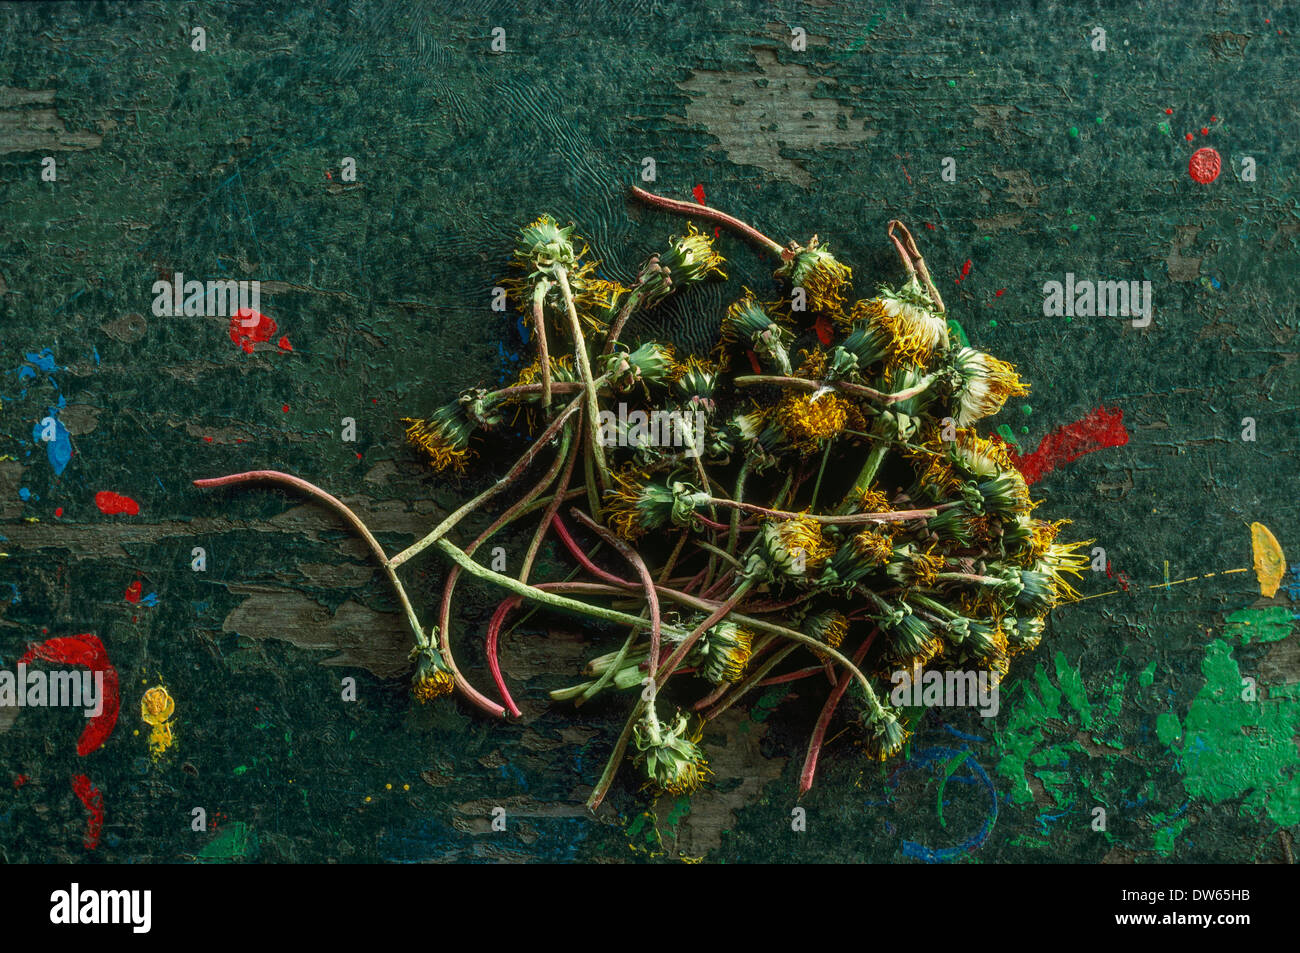 Les mauvaises herbes sauvages pissenlits fleurs mortes des éclaboussures de peinture tiges bouquet Banque D'Images